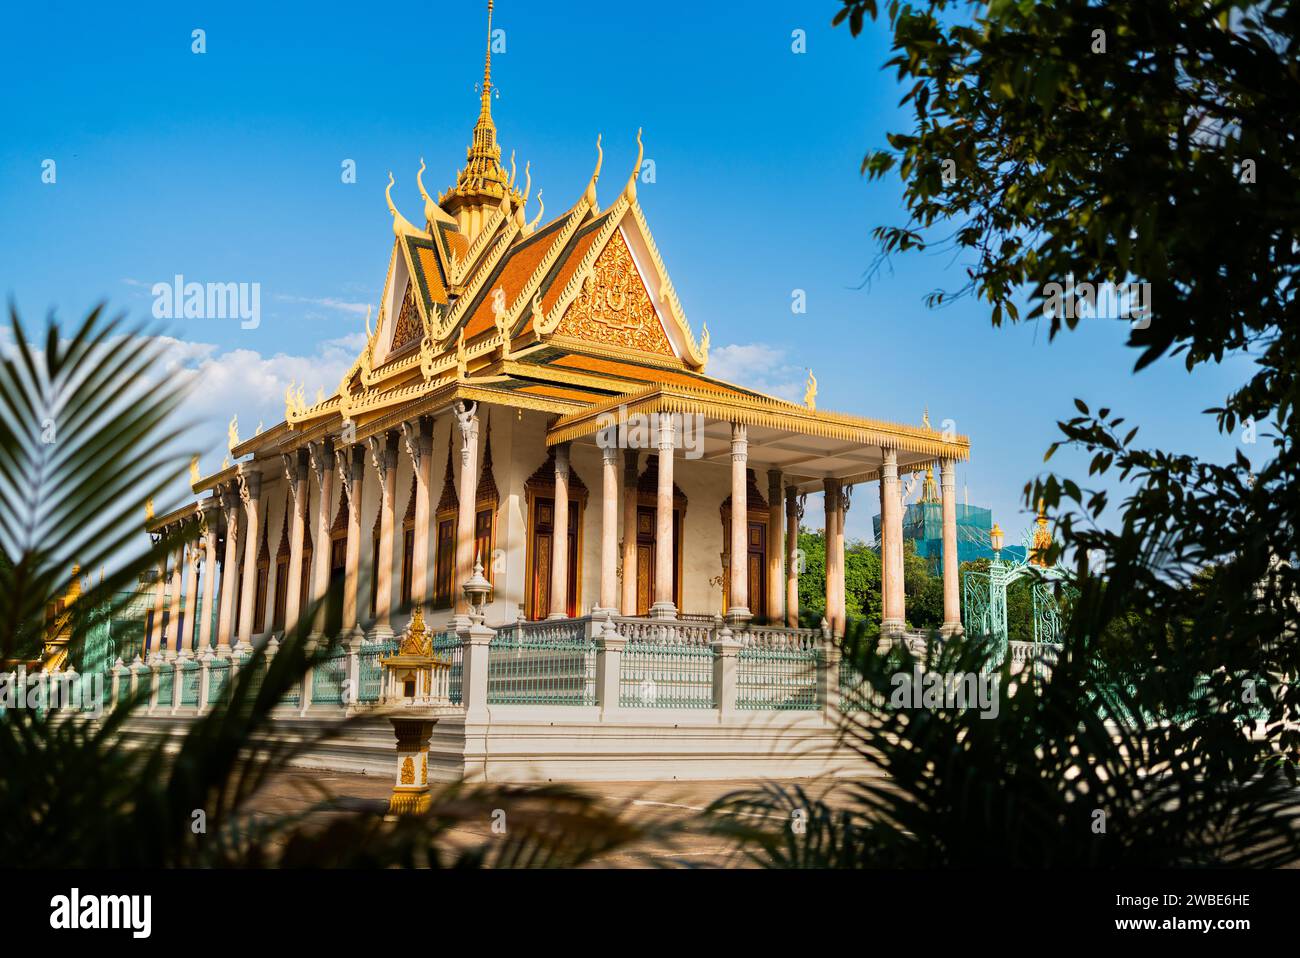 Phnom Penh, Cambodge. Palais royal, Pagode d'argent. Voyage et tourisme en Asie. Point de repère de la culture bouddhiste. Attraction touristique dans la capitale. Banque D'Images